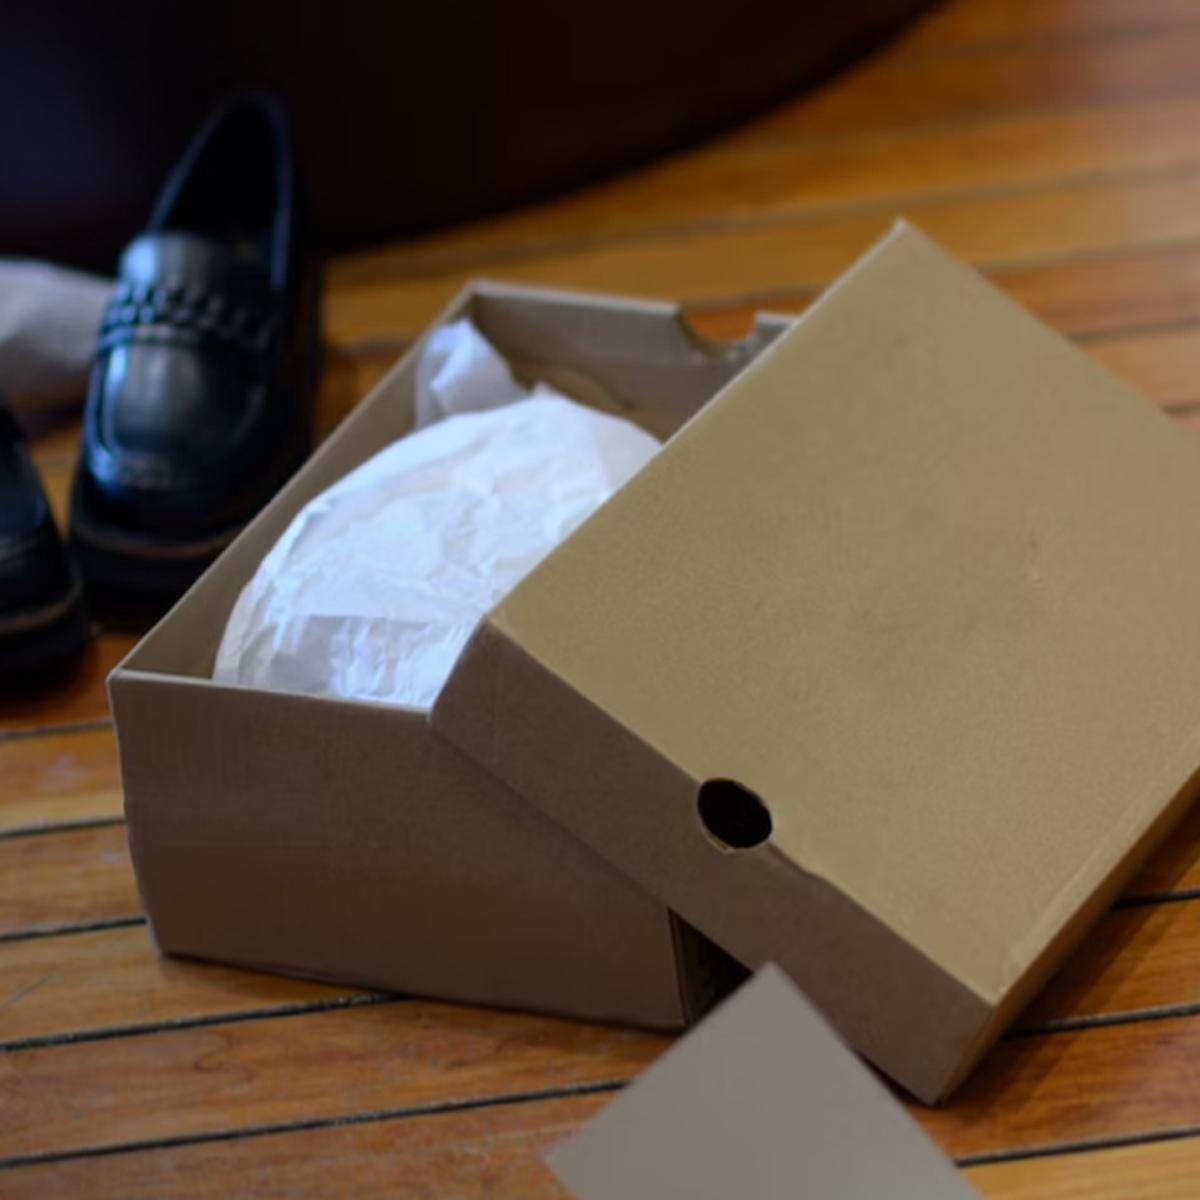 Trucos caseros: cómo reutilizar las cajas de zapatos: ideas